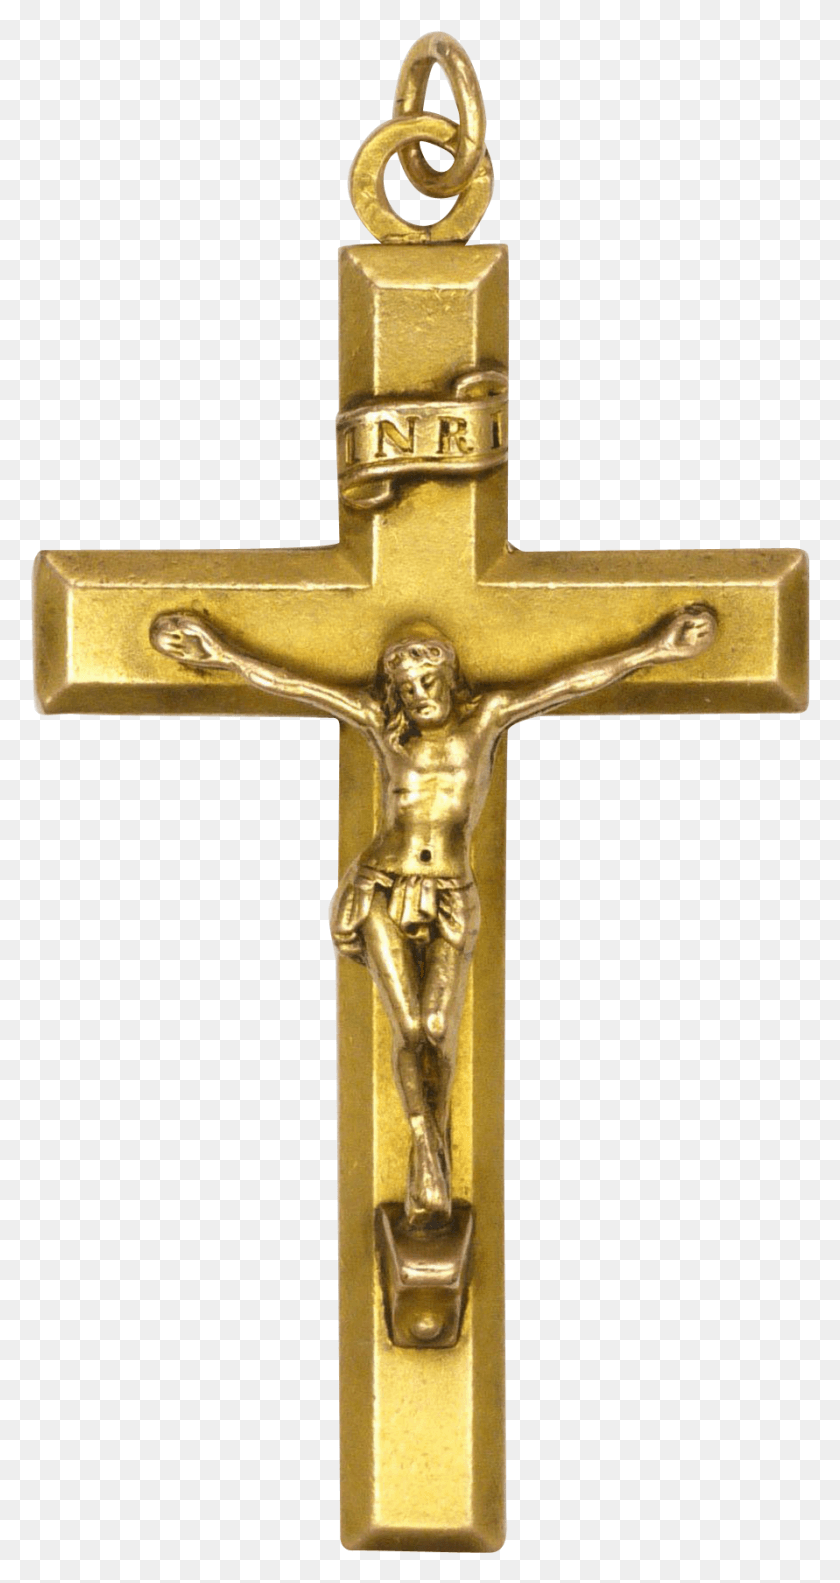 891x1740 Descargar Png Crucifijo Art Nouveau A20 M Maidstone Bypass, Cruz, Símbolo Hd Png